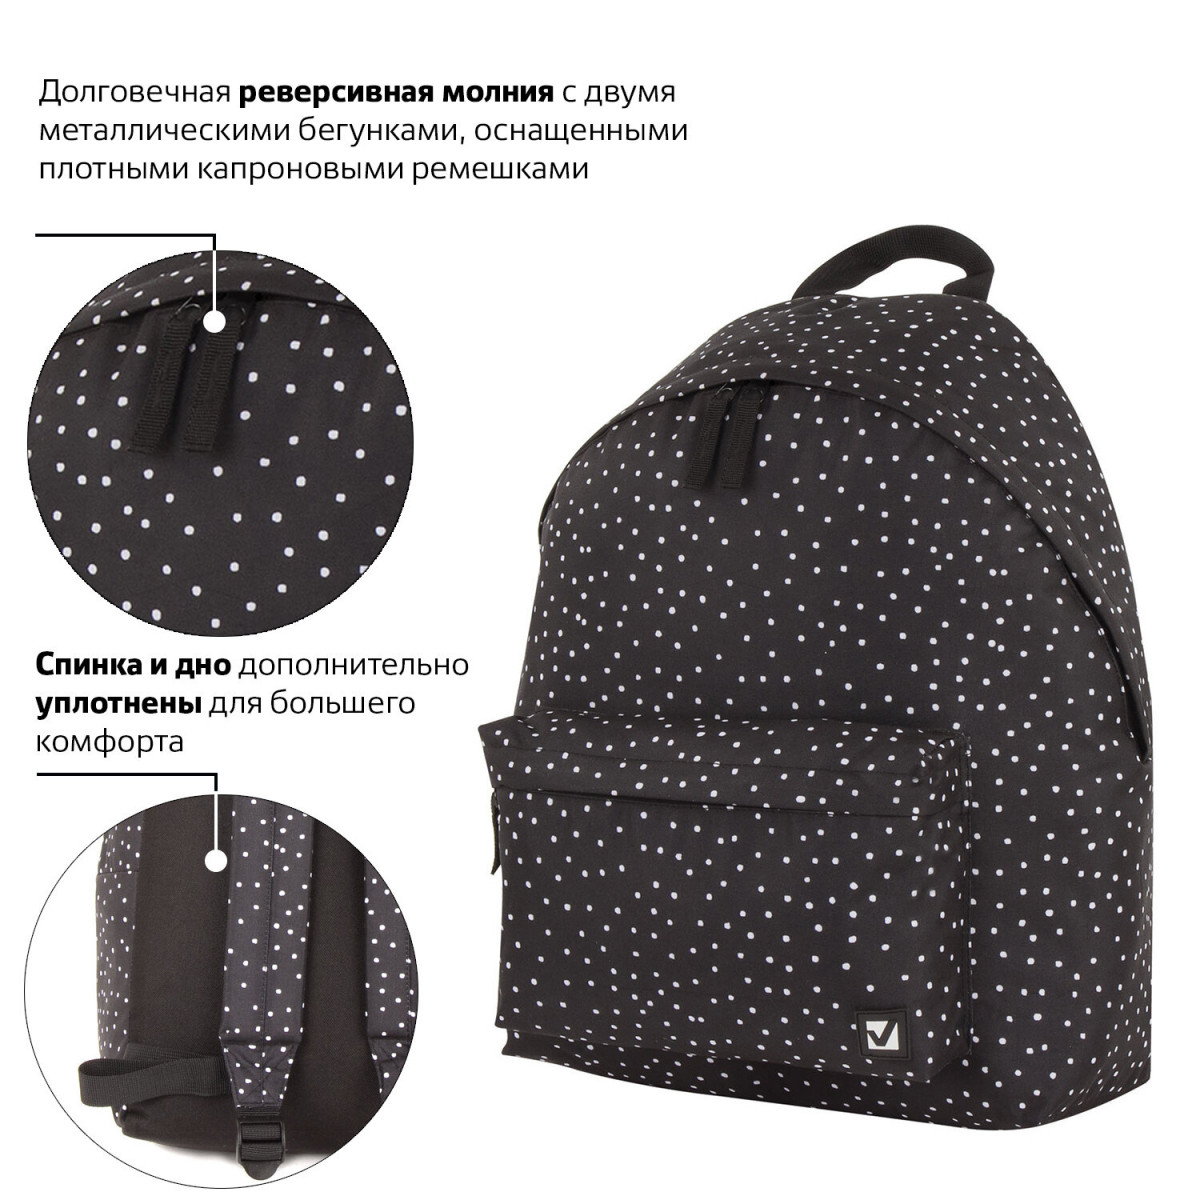 Рюкзак BRAUBERG, универсальный, сити-формат, черный в горошек, 20 литров, 41х32х14 см, 228845 (арт. 228845)